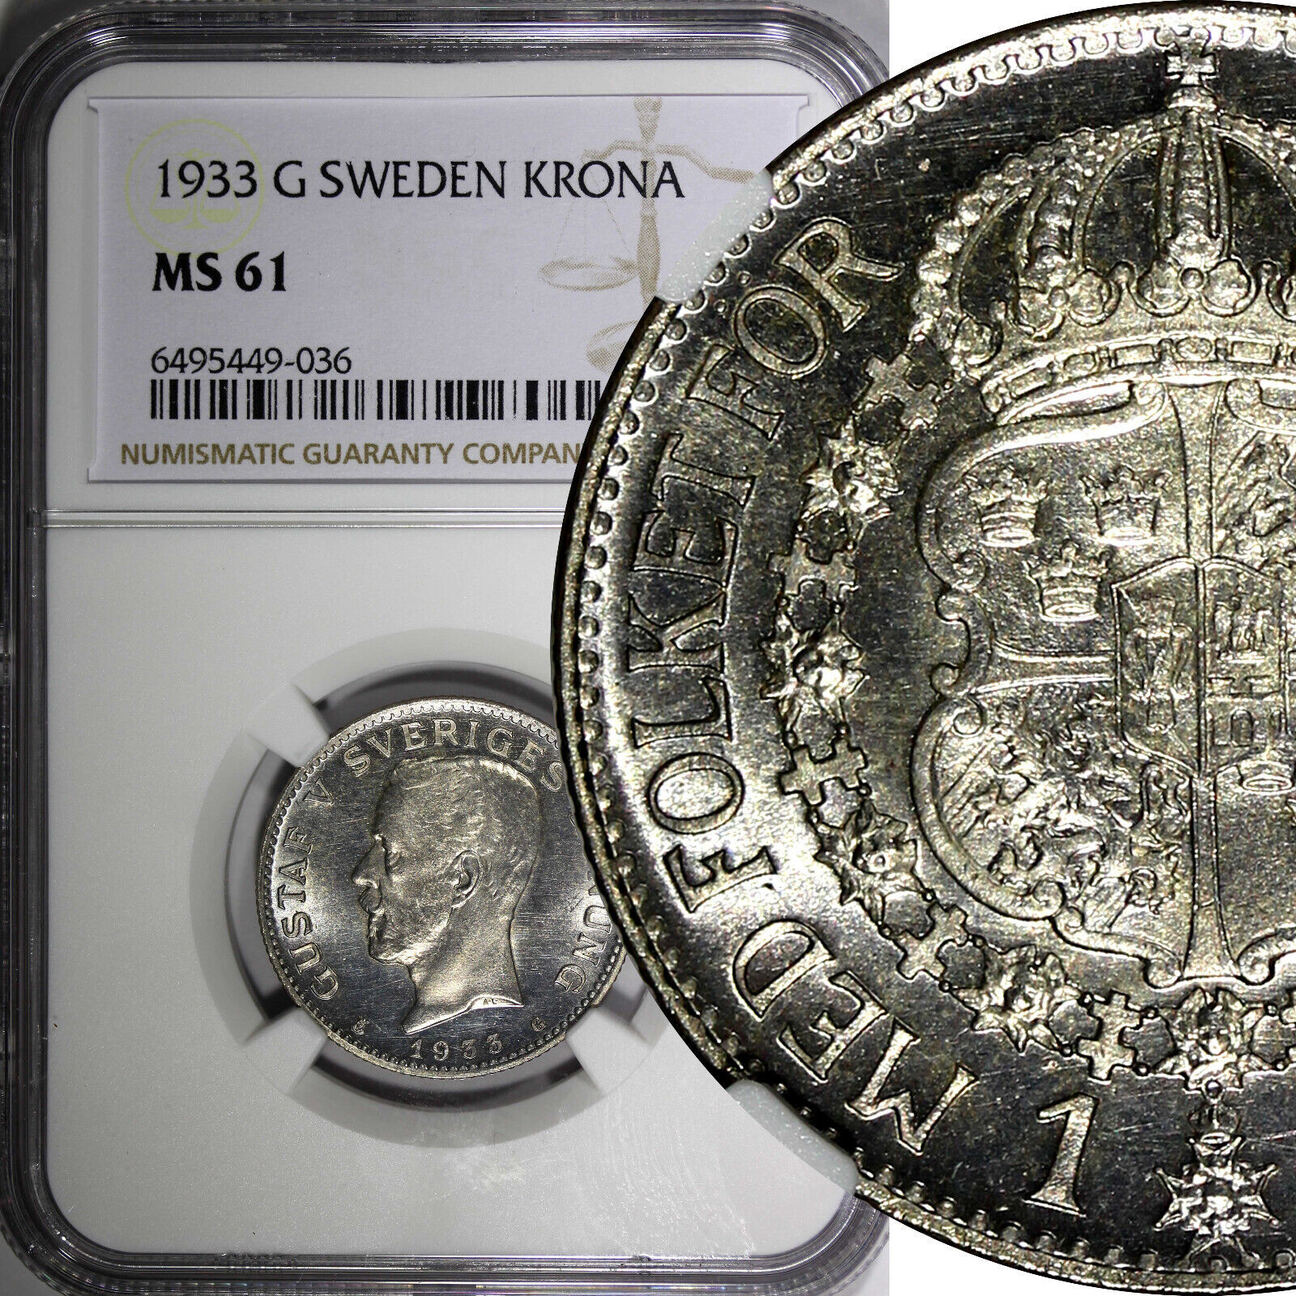 1 Krona Sweden Gustaf V Silver 1933 G Ngc Ms61 Proof Like Flashy Km 786 2 036 Ma Shops